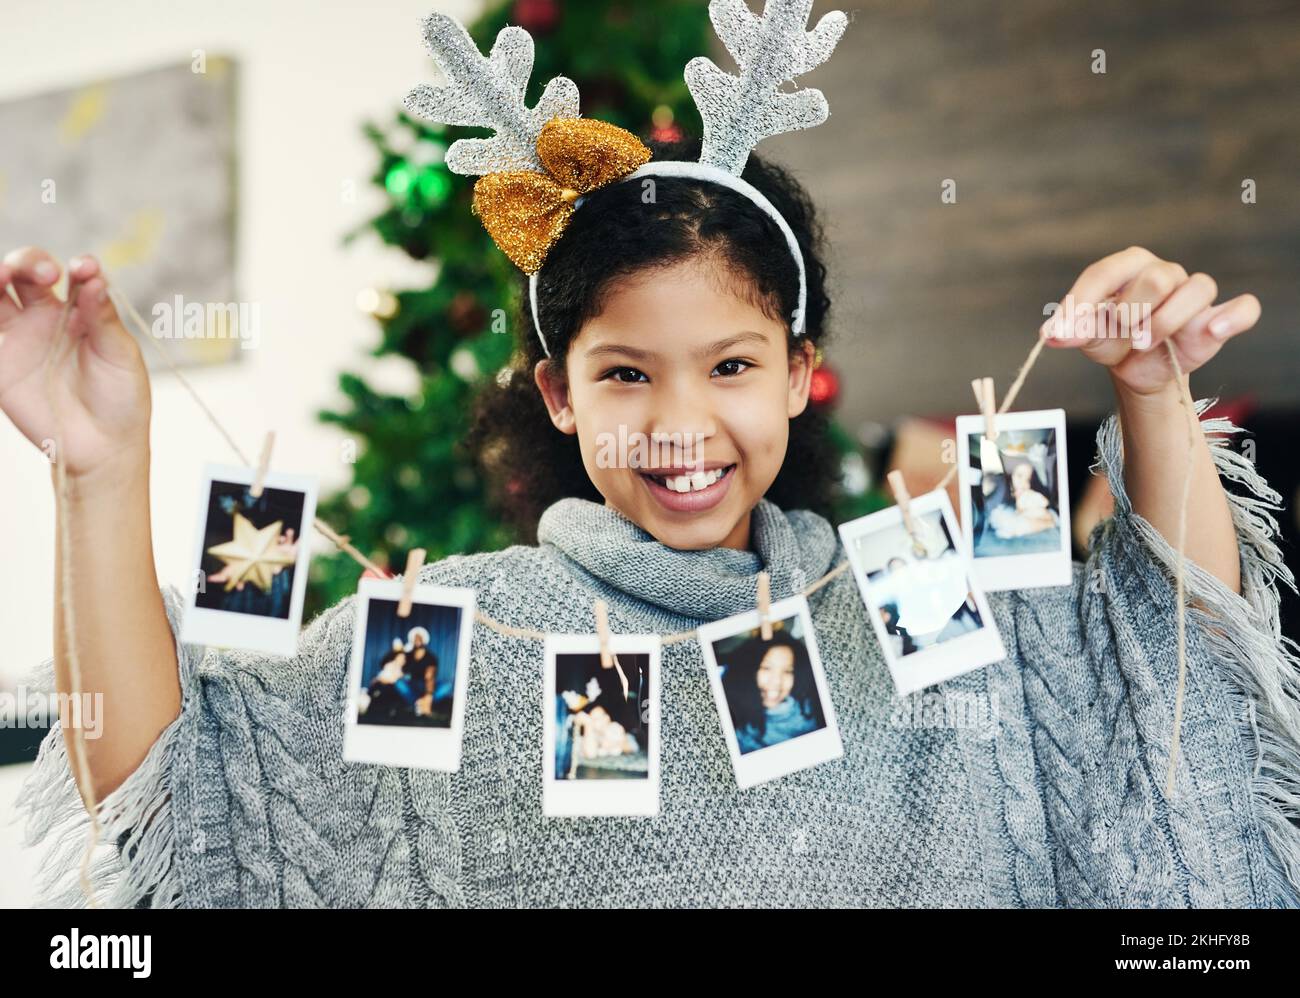 Weihnachten, Feier und Mädchen mit polaroid zur Dekoration, glücklich und zeigen Fotos im Haus. Lächeln, Aufregung und Porträt eines Kindes mit Bildern Stockfoto